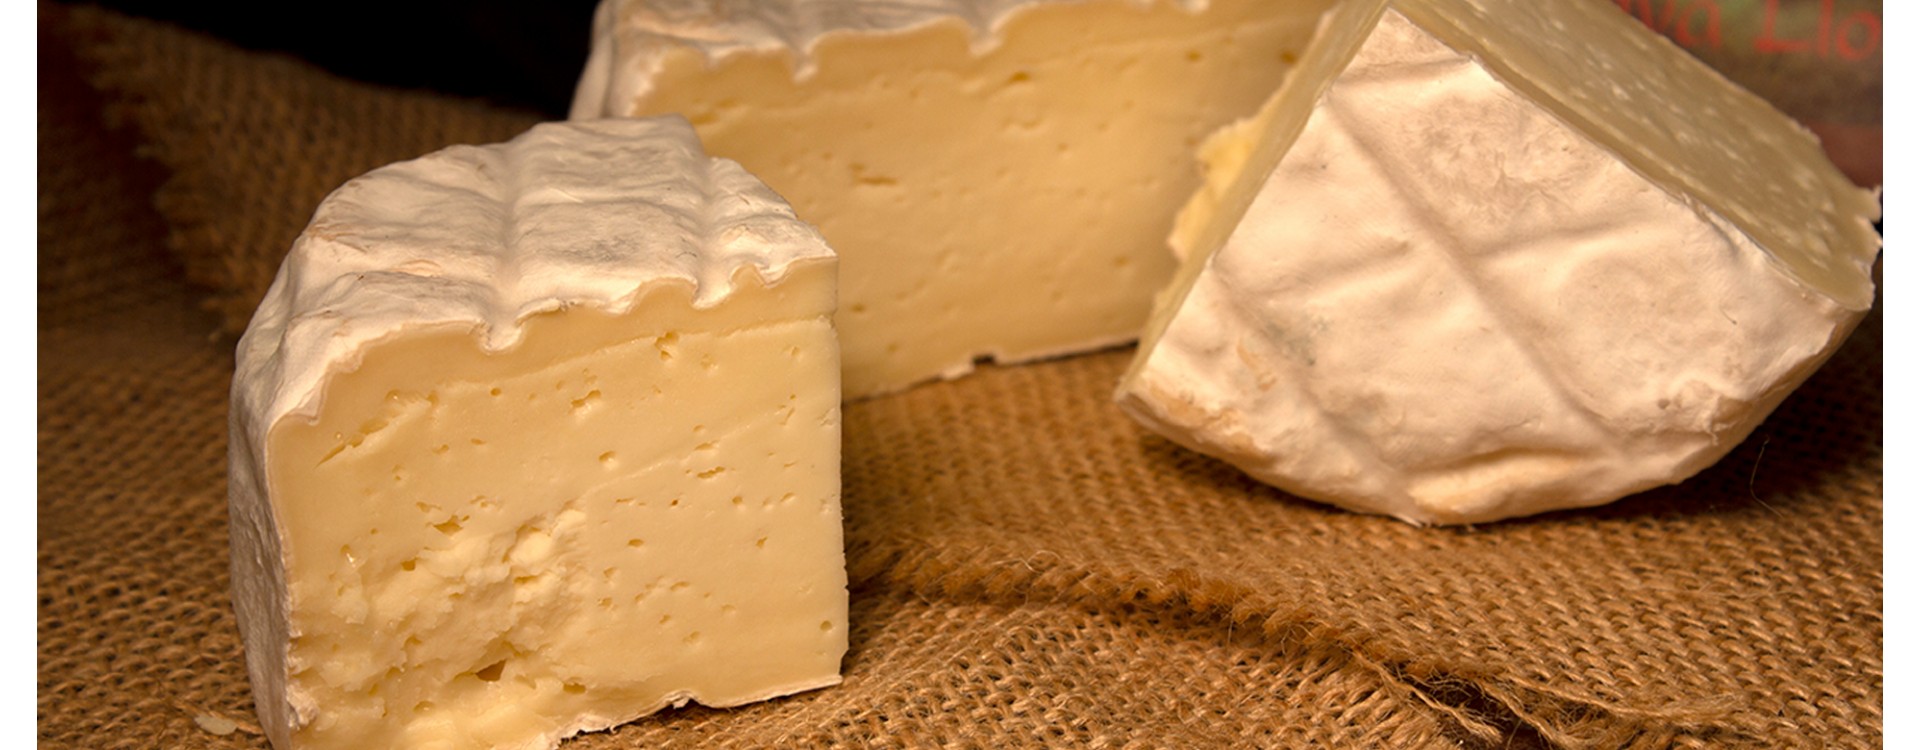 Cueva de Llonín, el queso asturiano tipo camembert de Peñamellera